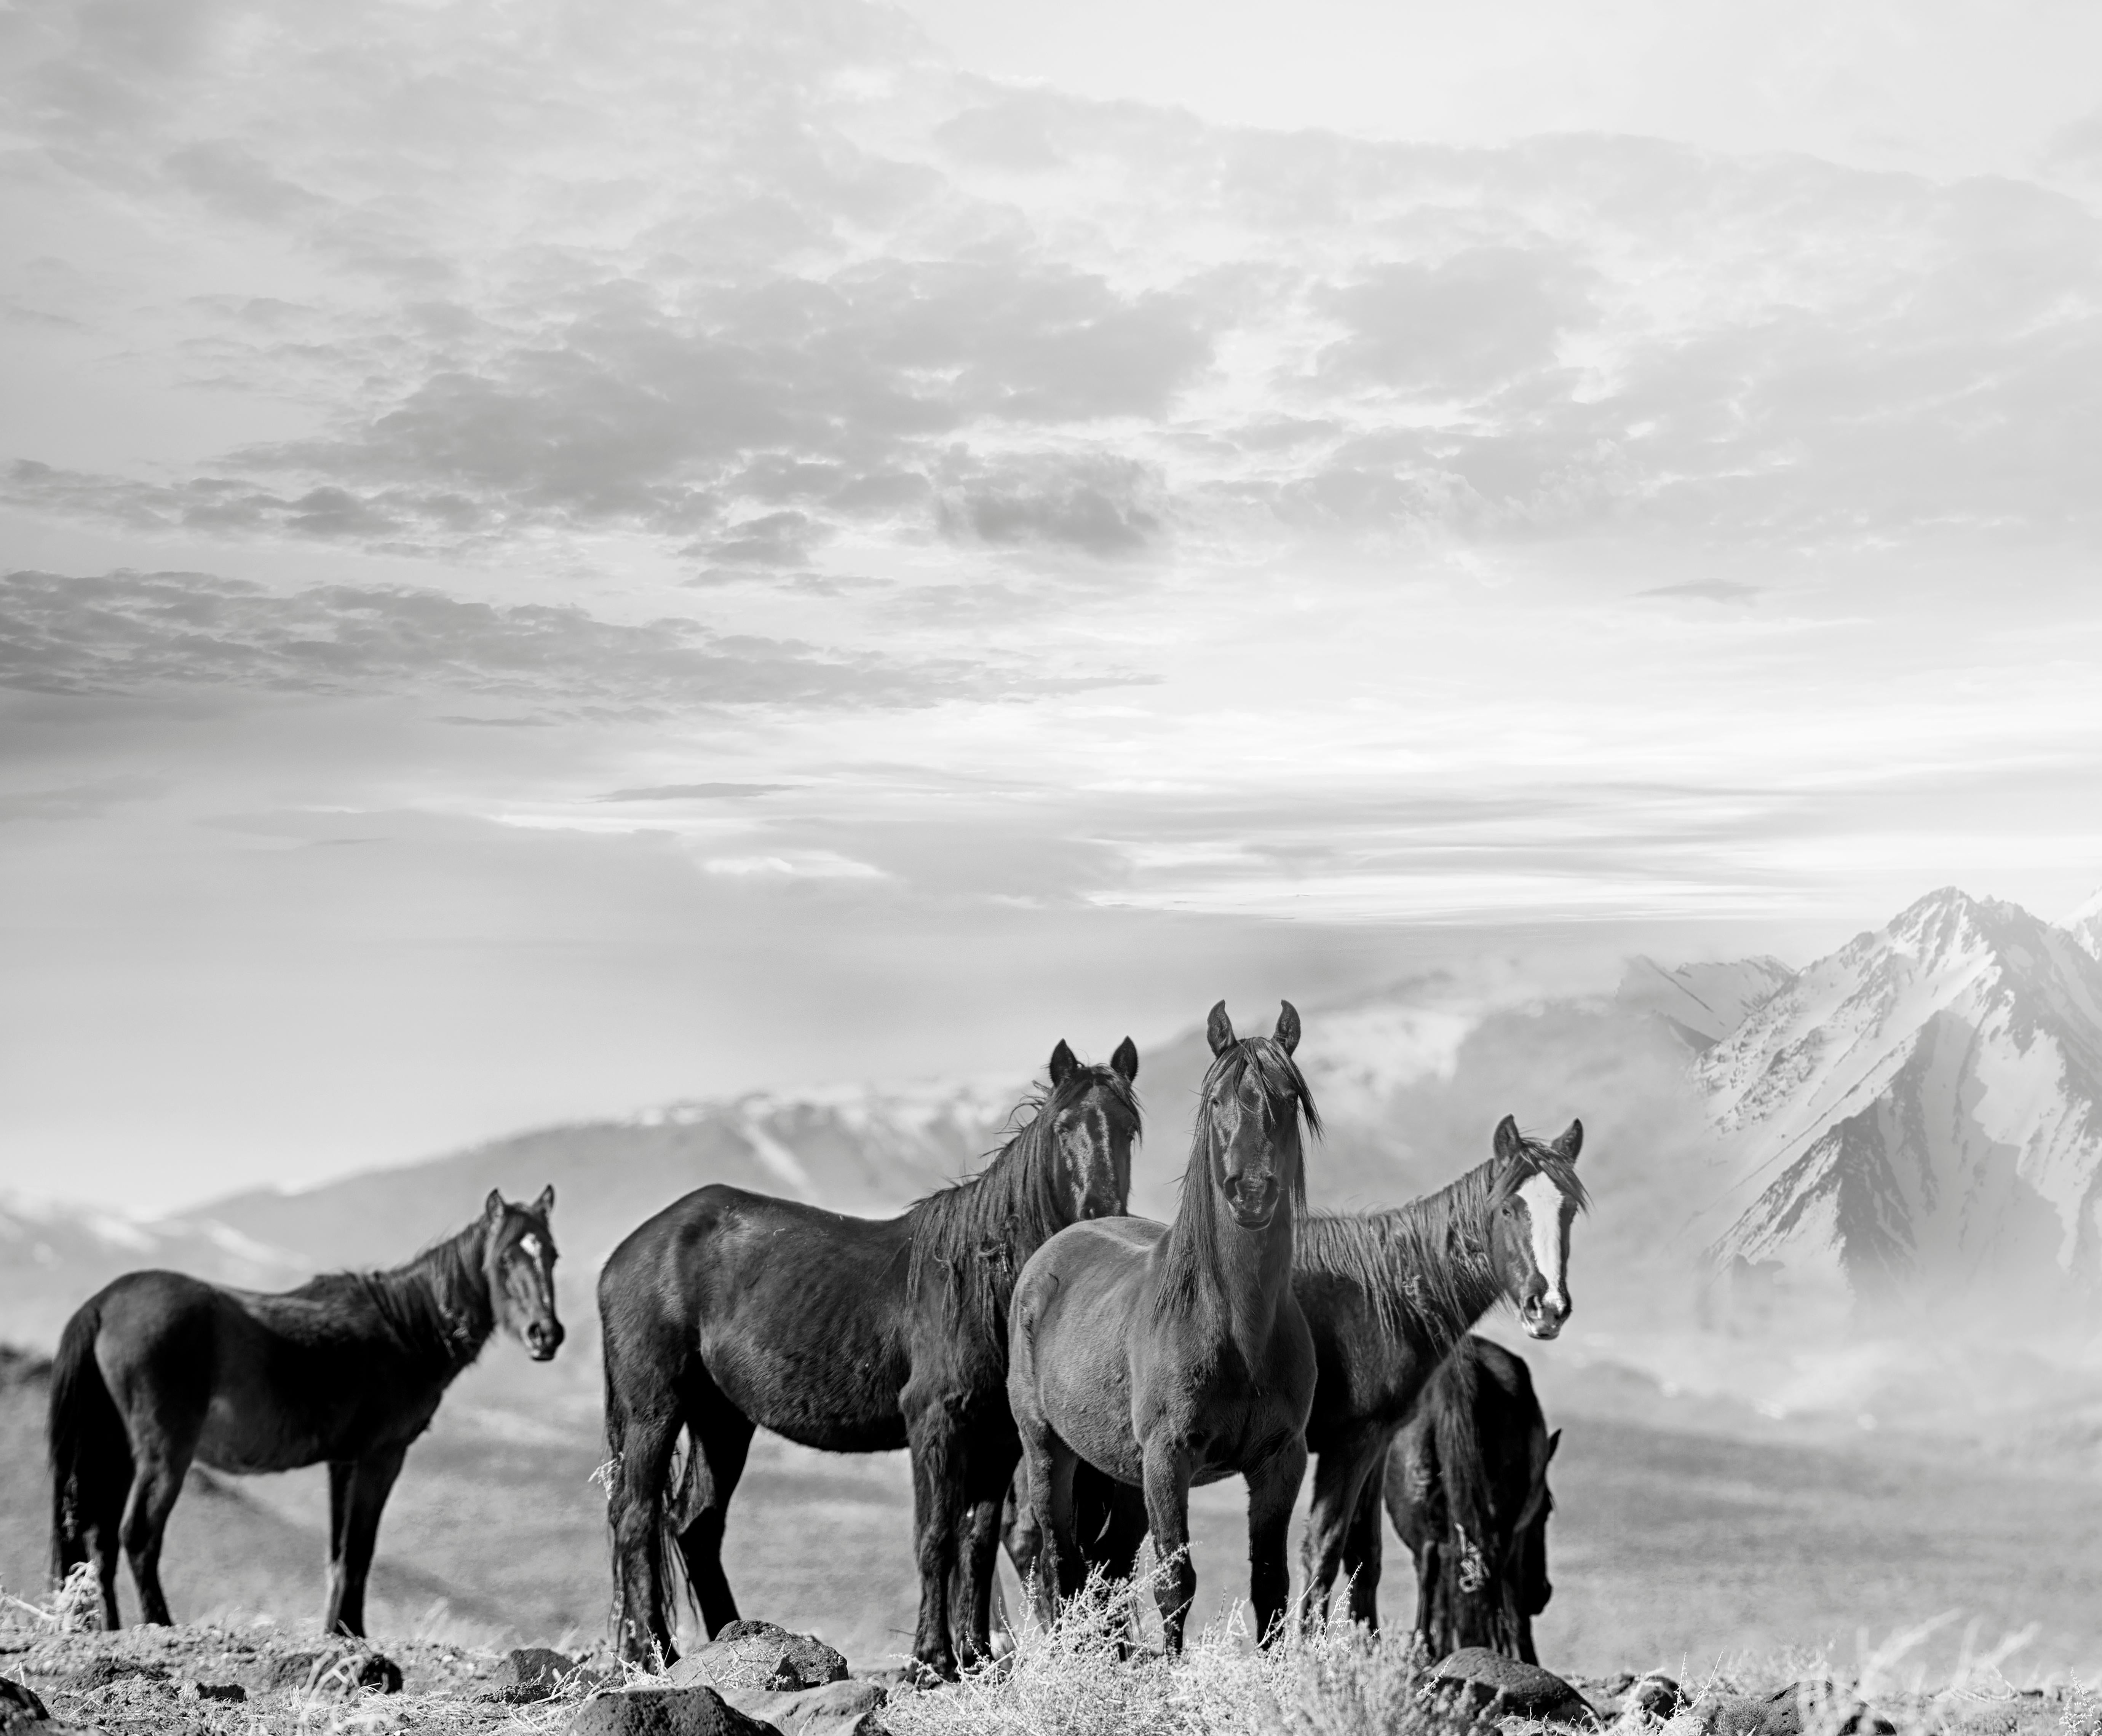 Animal Print Shane Russeck - High Sierra Mustangs 36x48 Photographie en noir et blanc Chevaux sauvages, non signée